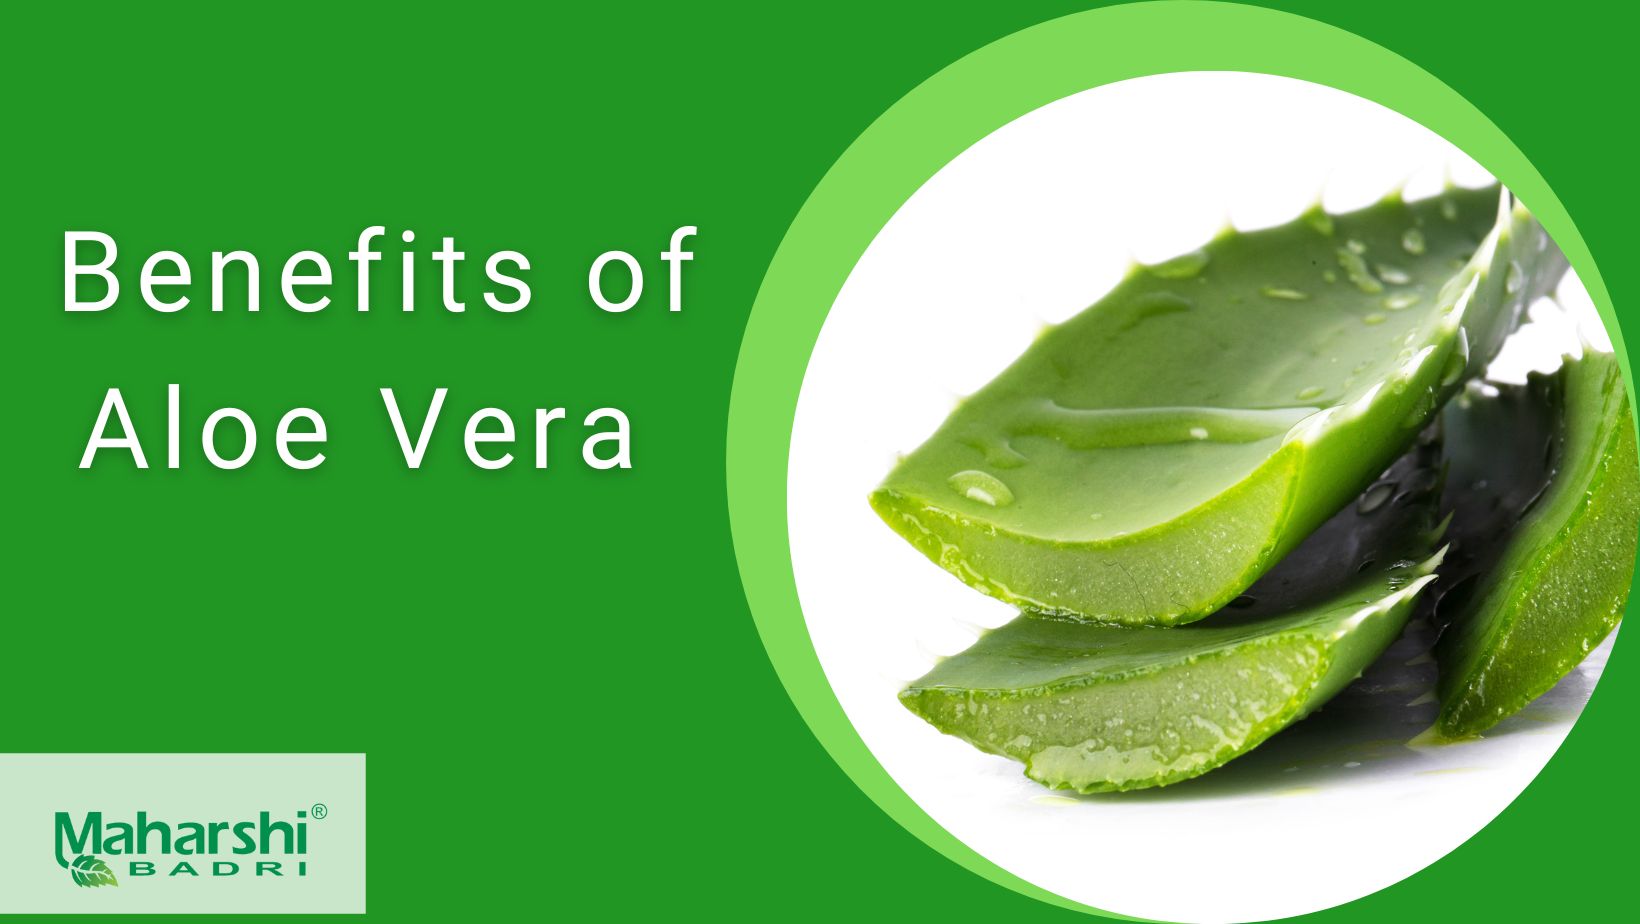 Benefits of Aloe vera